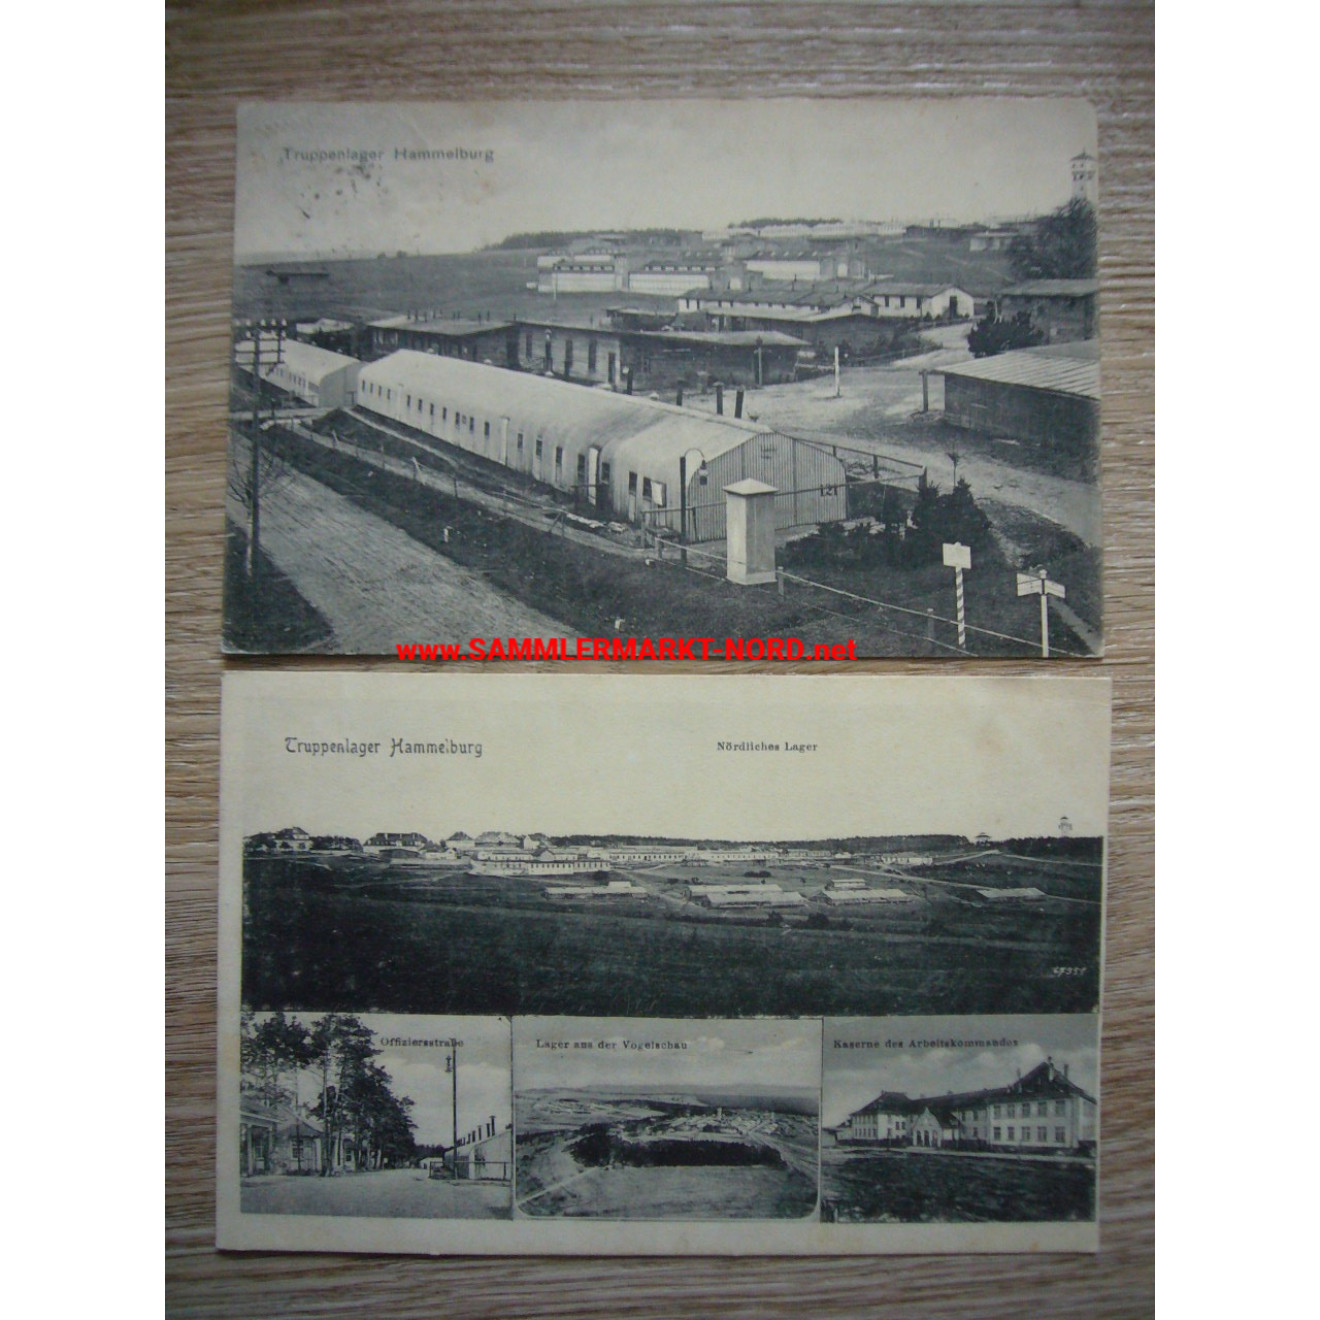 2 x Postkarte - Lager Hammelburg - Kaserne vom Arbeitskommando usw.